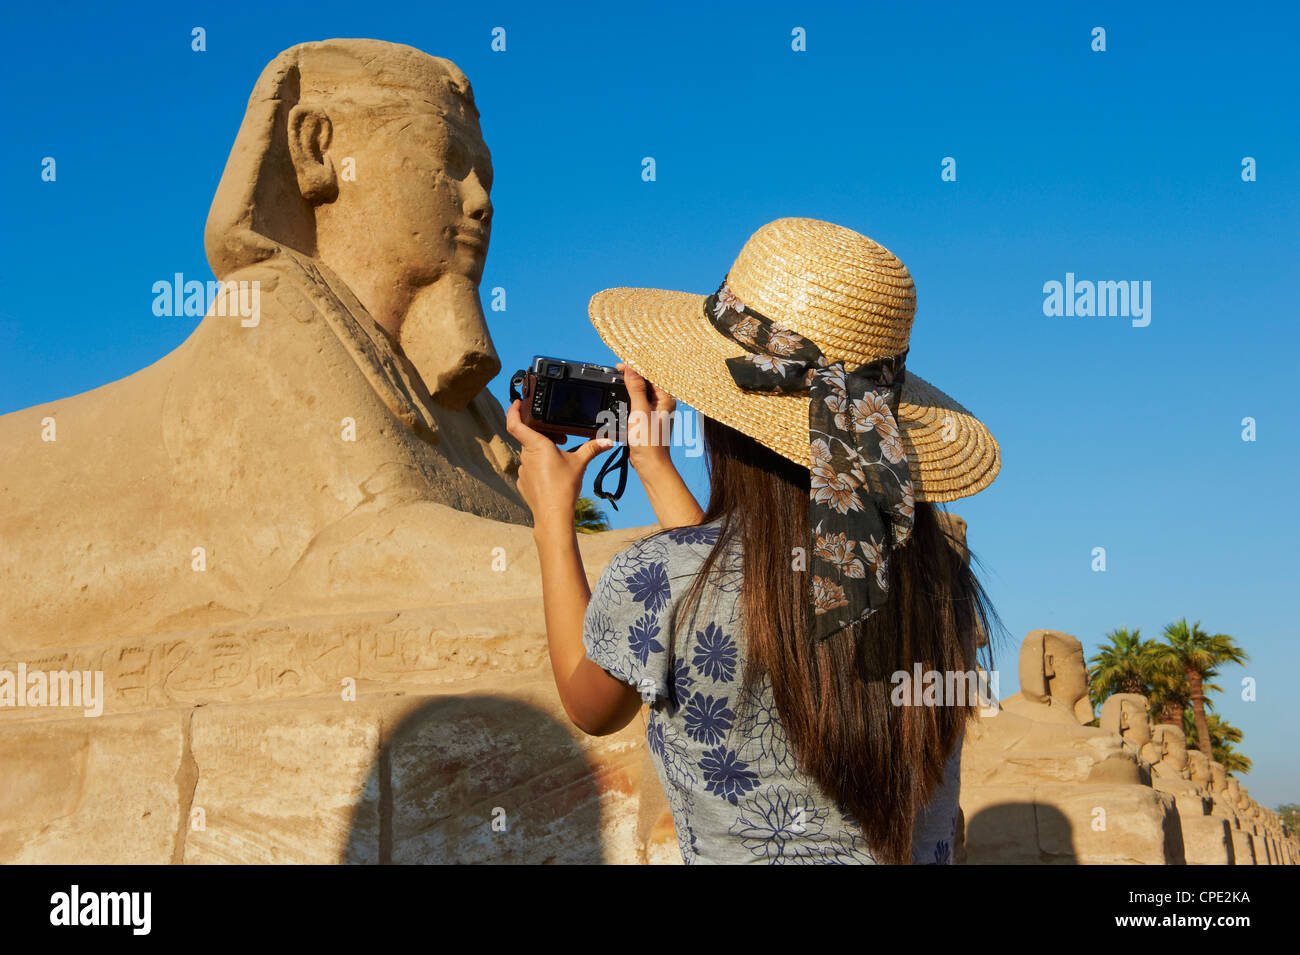 Tomando una fotografía turística en el camino de la Esfinge, el Templo de Luxor, Luxor, Tebas, Sitio del Patrimonio Mundial de la UNESCO, Egipto, África Foto de stock